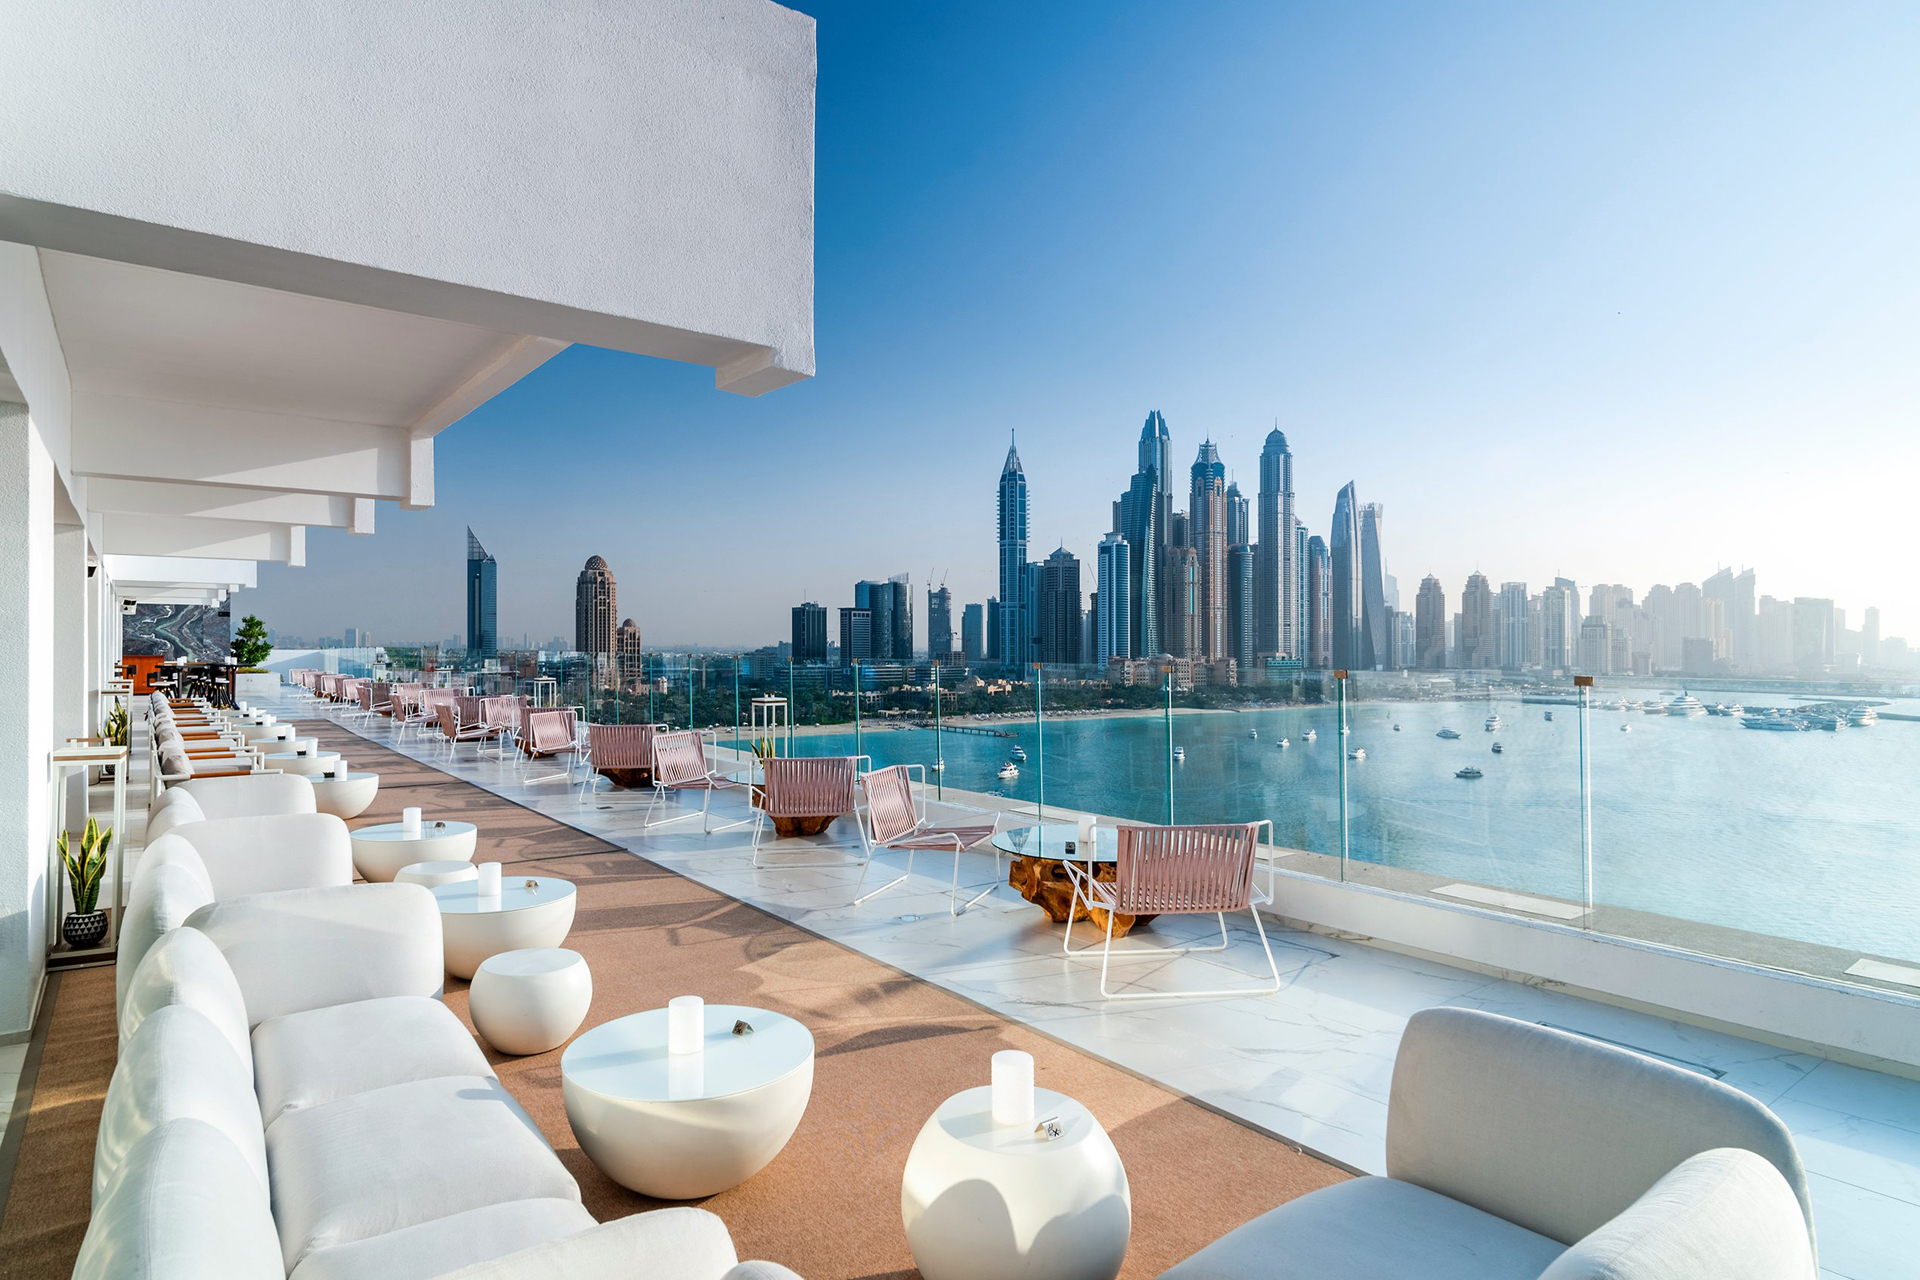 Dubai's Best Rooftop Bars 2019 | Time Out Dubai